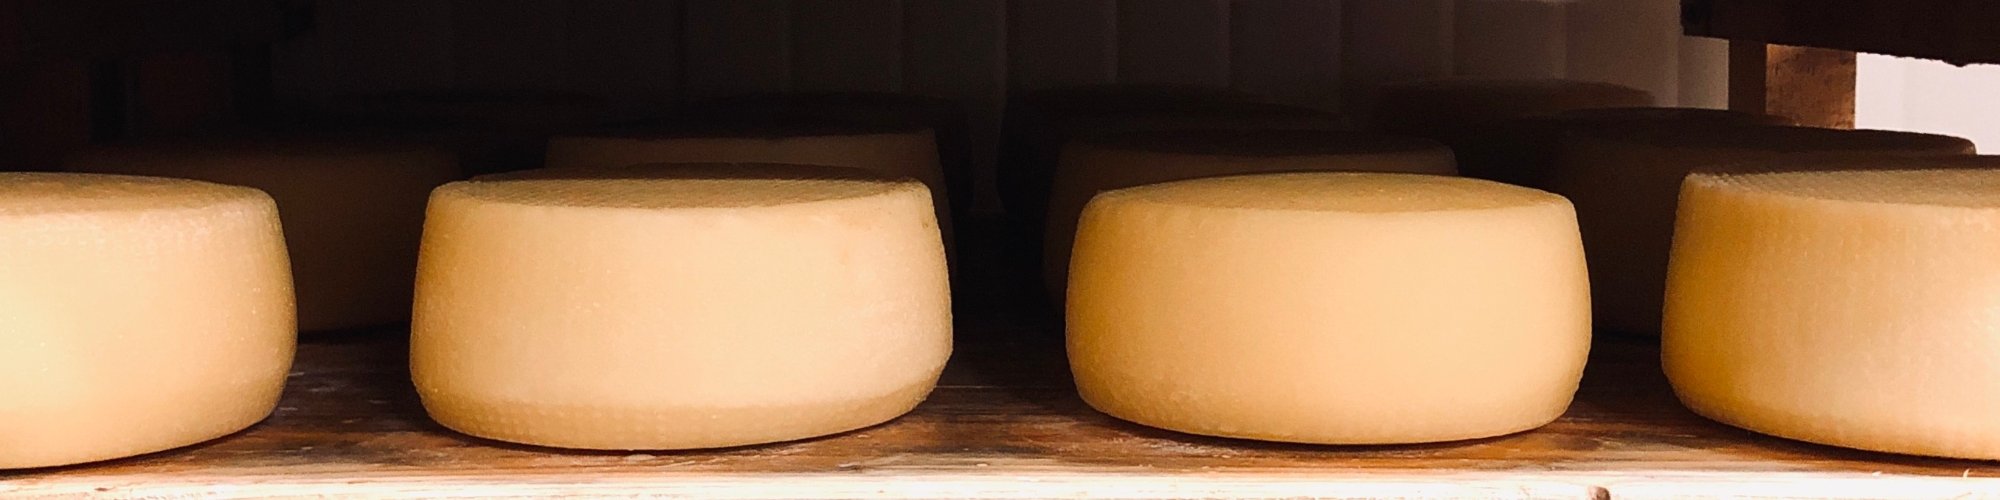 Stagionatura formaggi in Mugello